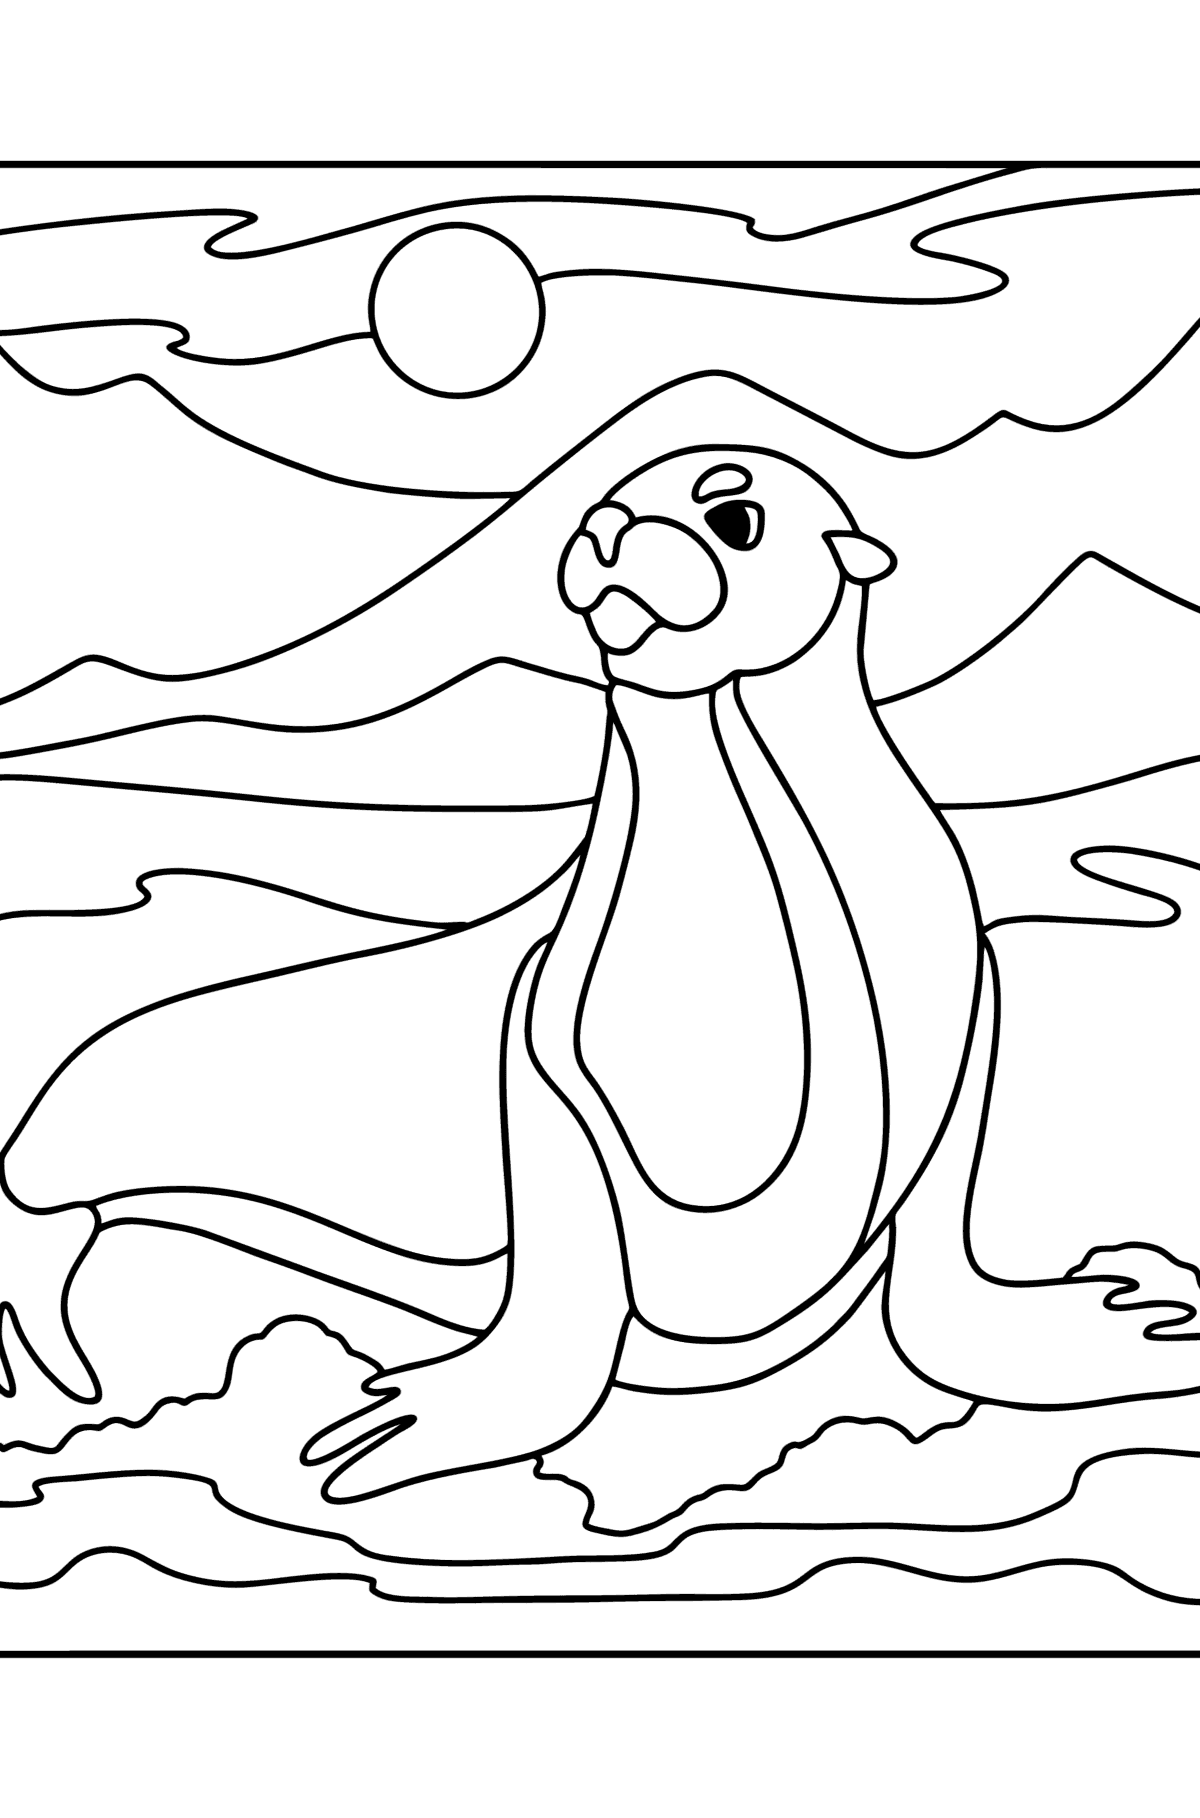 Desenho de Leão marinho para colorir - Imagens para Colorir para Crianças